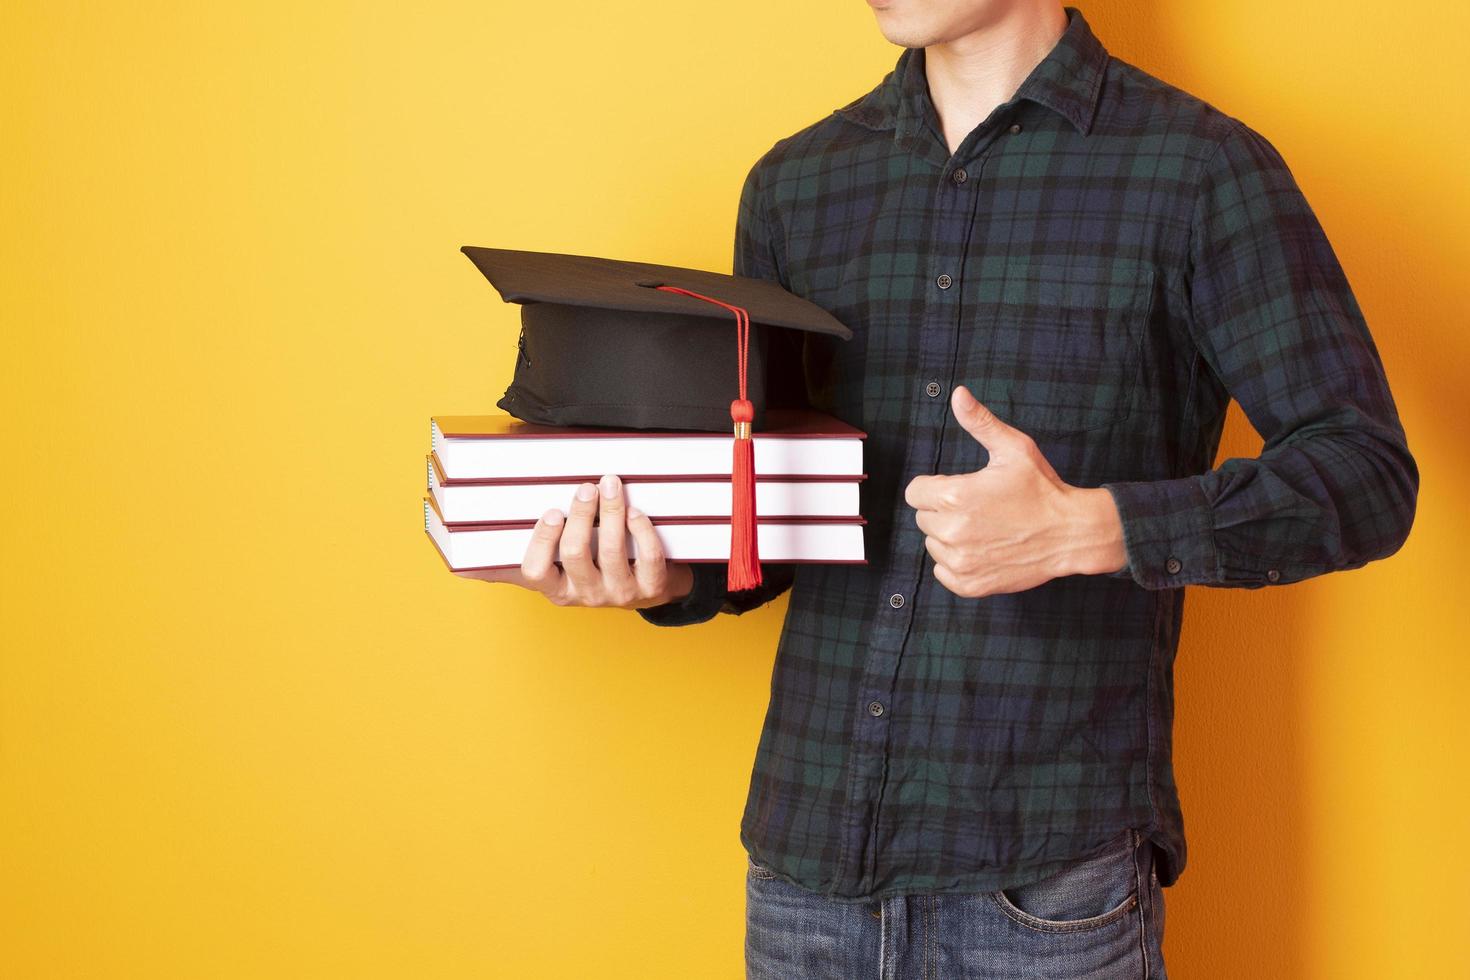 El hombre universitario está contento con la graduación sobre fondo amarillo foto